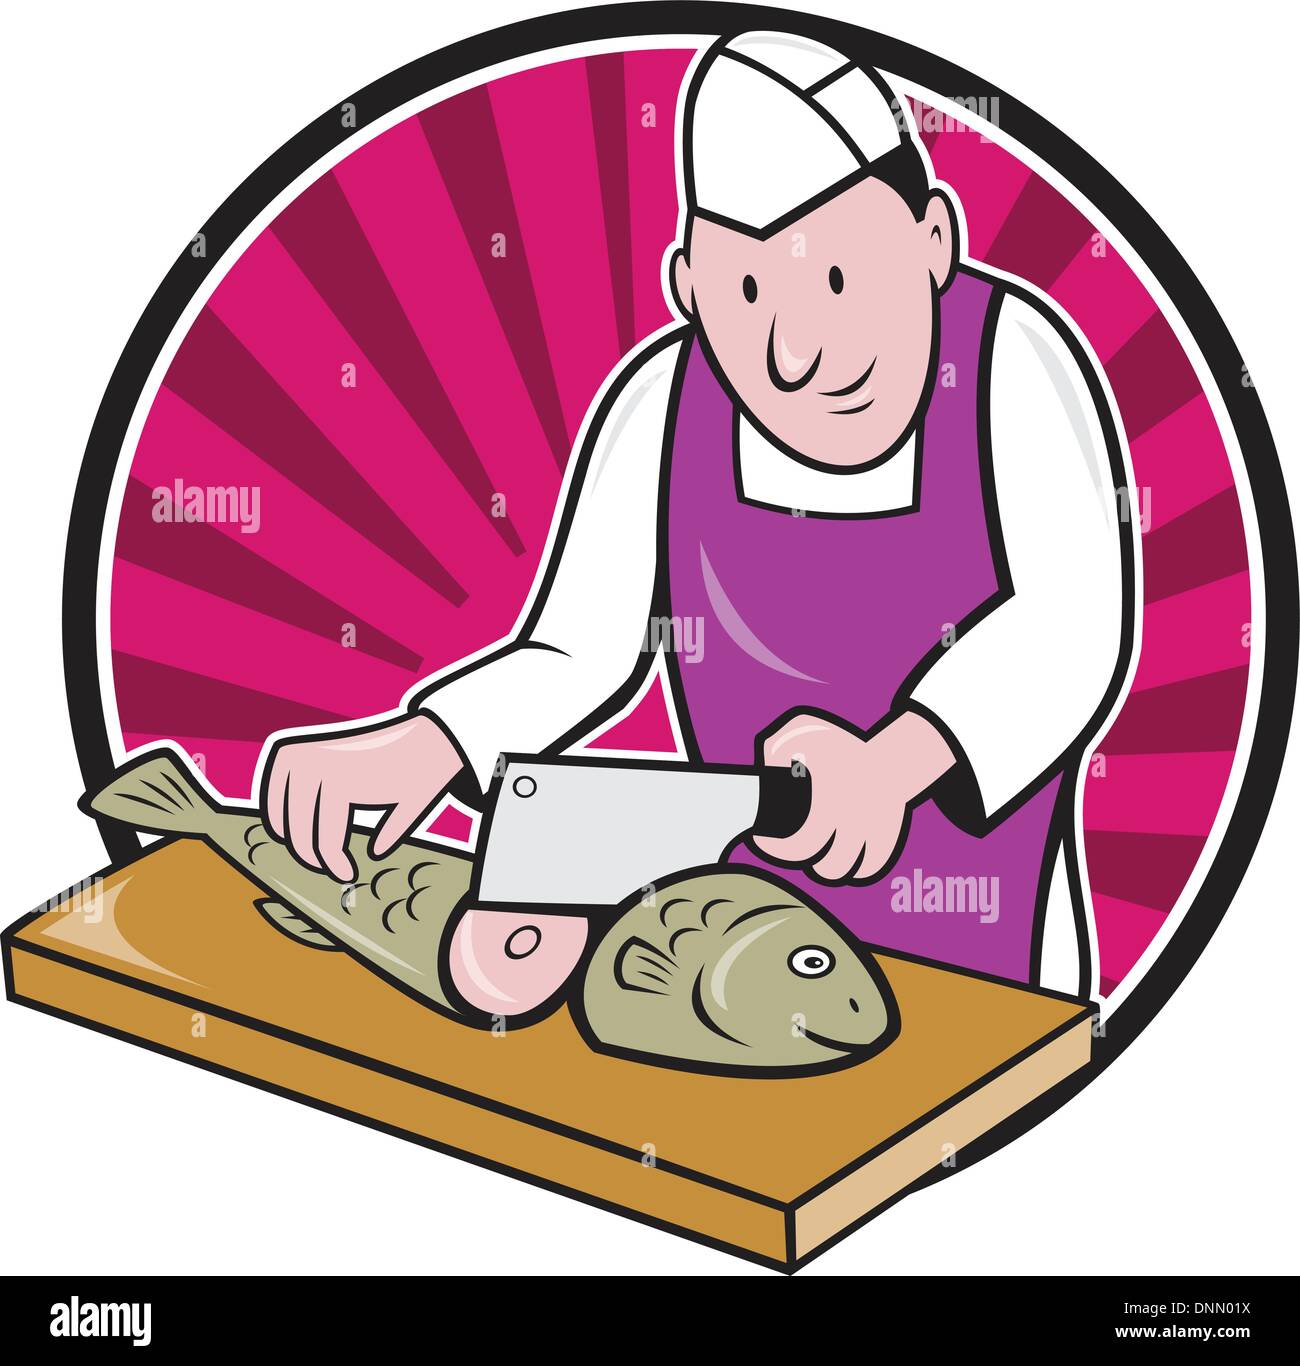 Illustration de style rétro d'un boucher poissonnier chef sushi travailleur coupe avec couperet à viande à hacher le poisson couteau face à l'avant fixé à l'intérieur du cercle sur fond isolé. Illustration de Vecteur